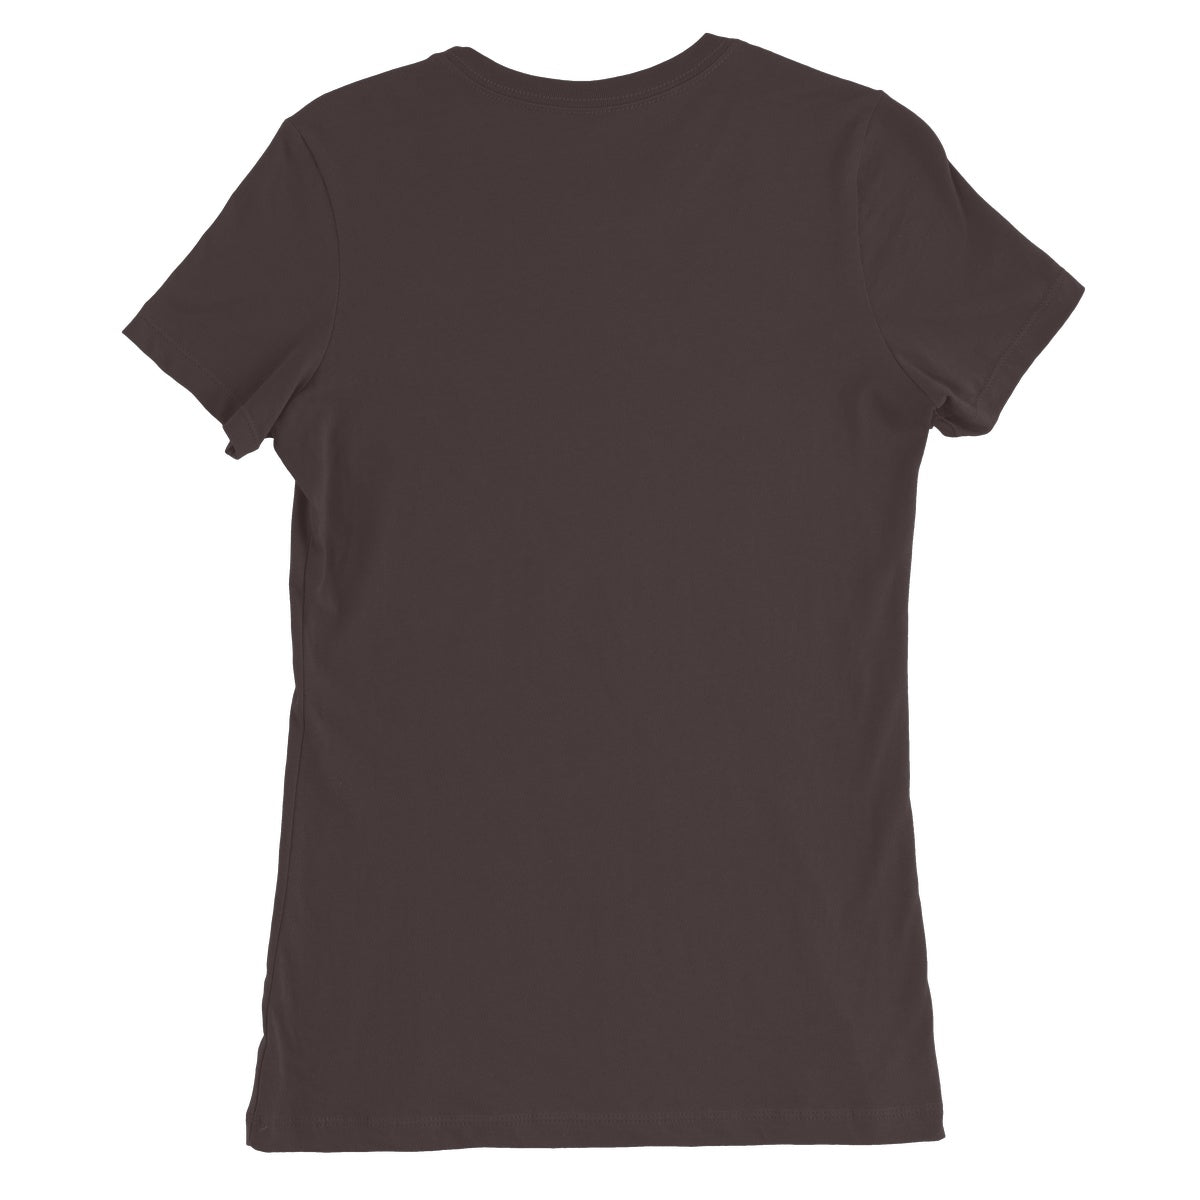 Kuen's Surface, Mesh Women's Favourite T-Shirt